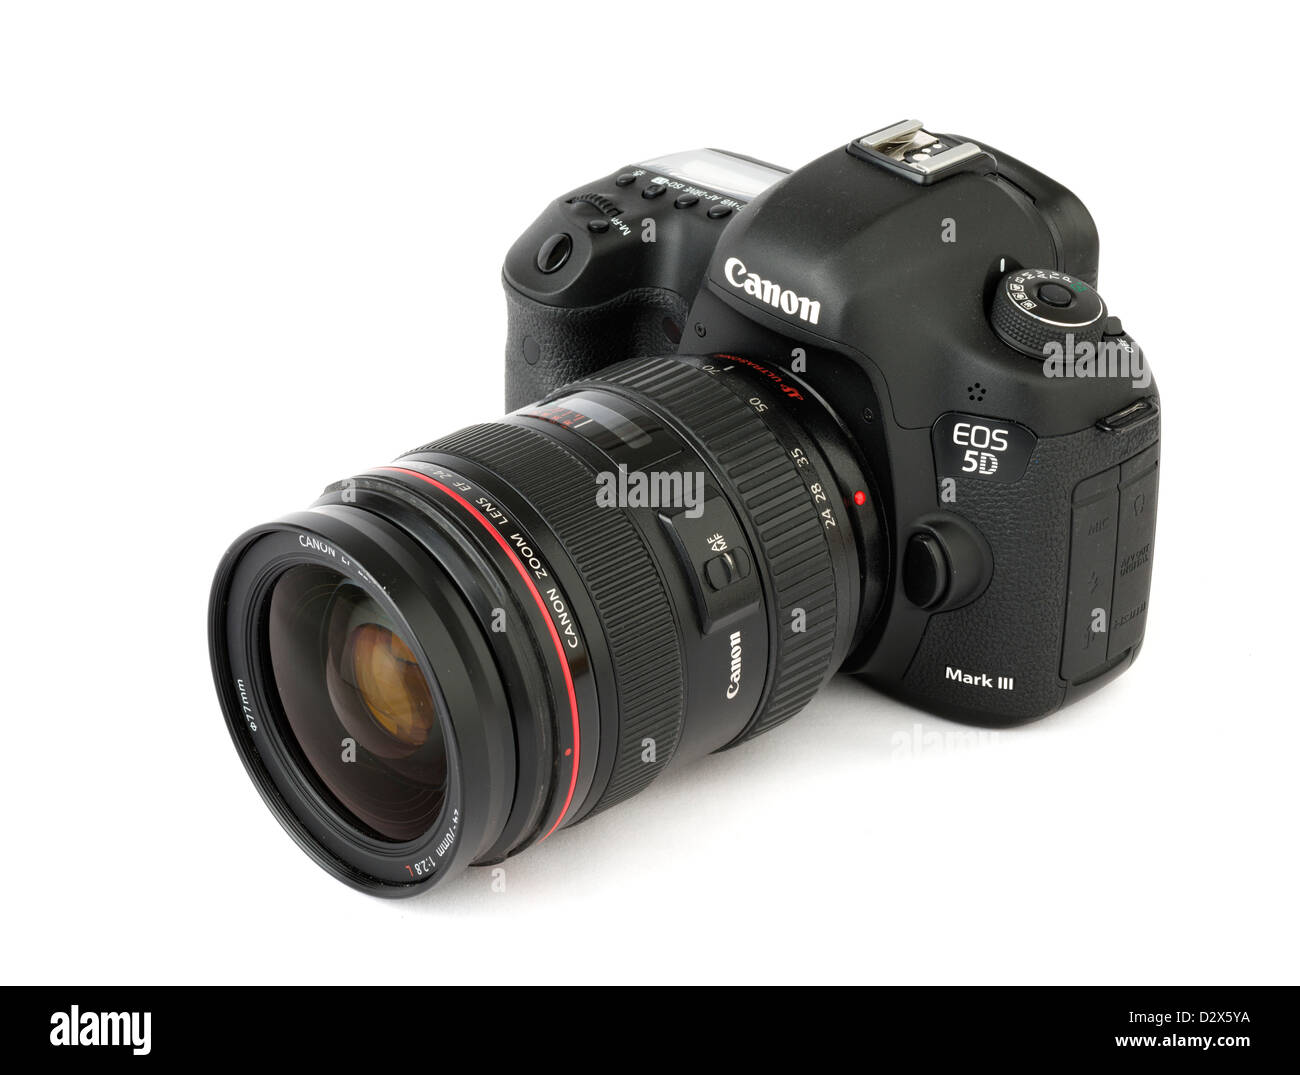 Una Canon EOS 5D Mark III fotocamera reflex digitale con Canon EF 24-70mm f/2.8L lente di zoom Foto Stock